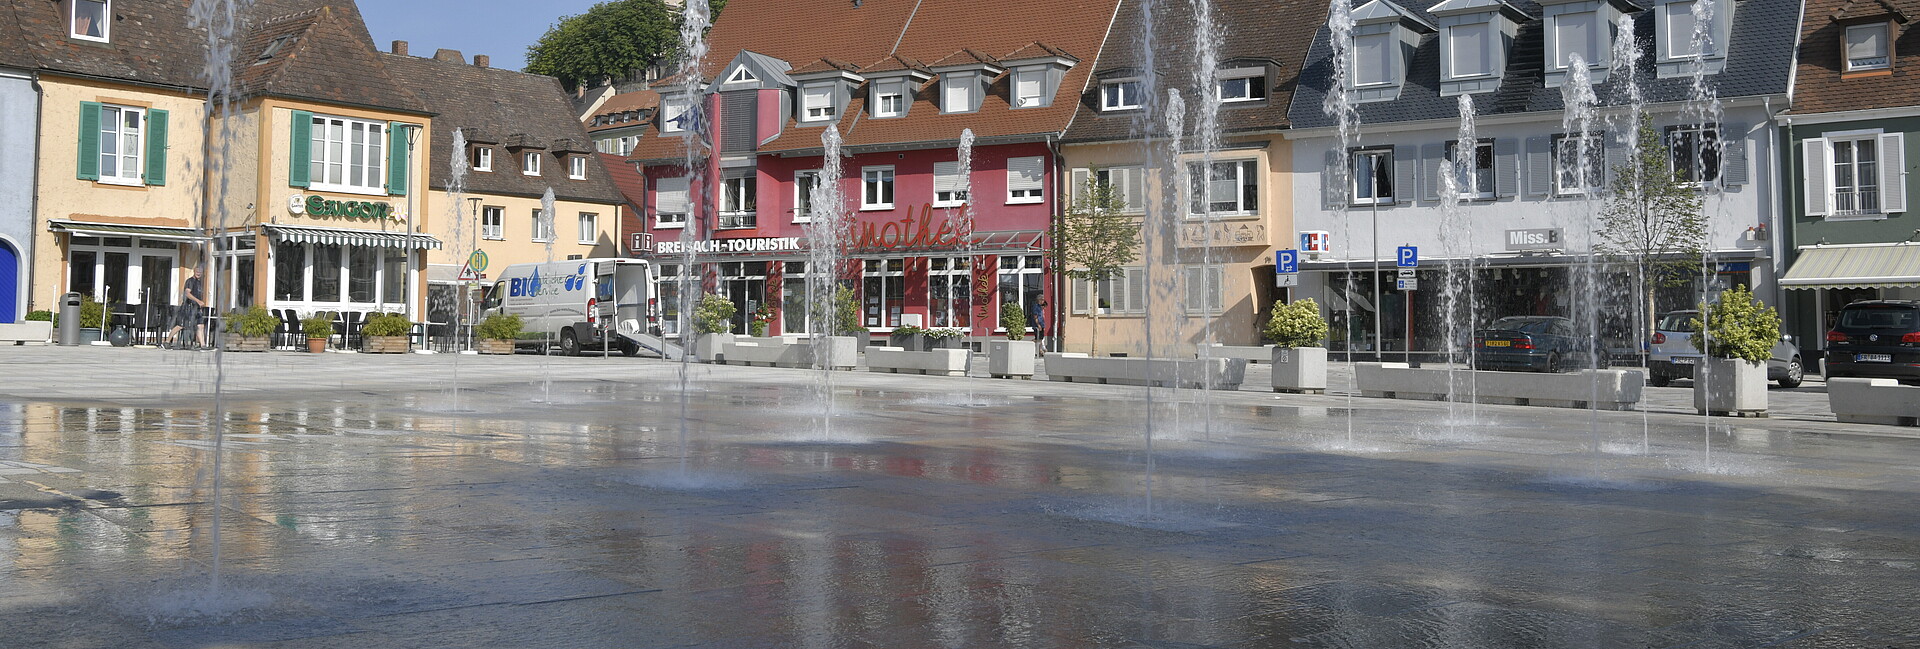 Breisacher Innenstadt nach der Neugestaltung